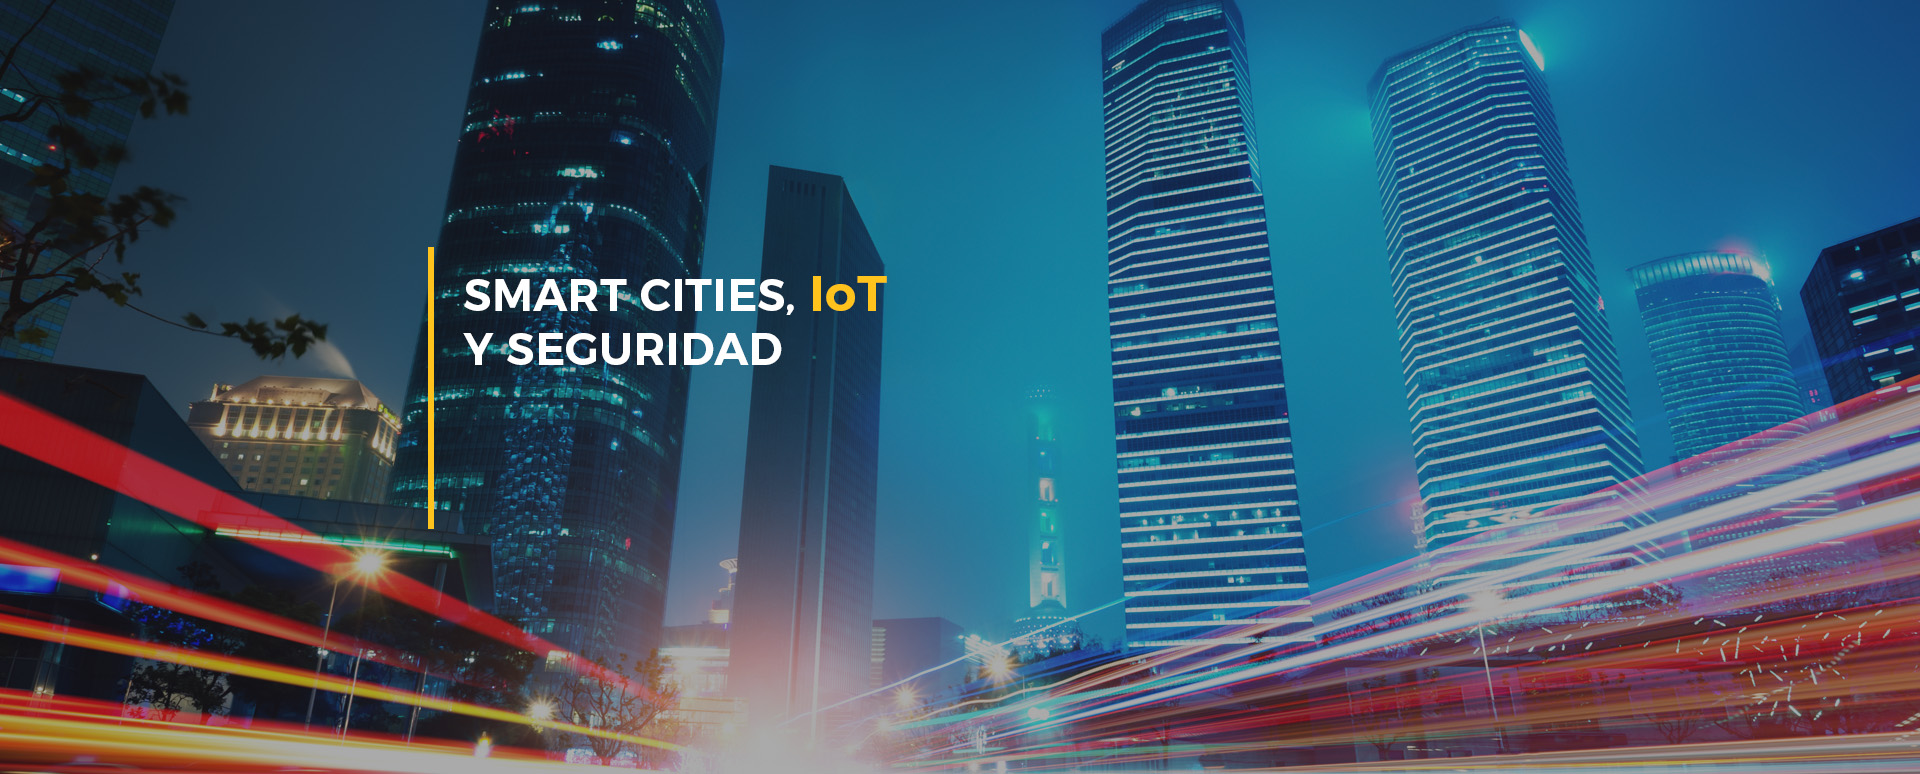 Smart cities, IOT y seguridad.